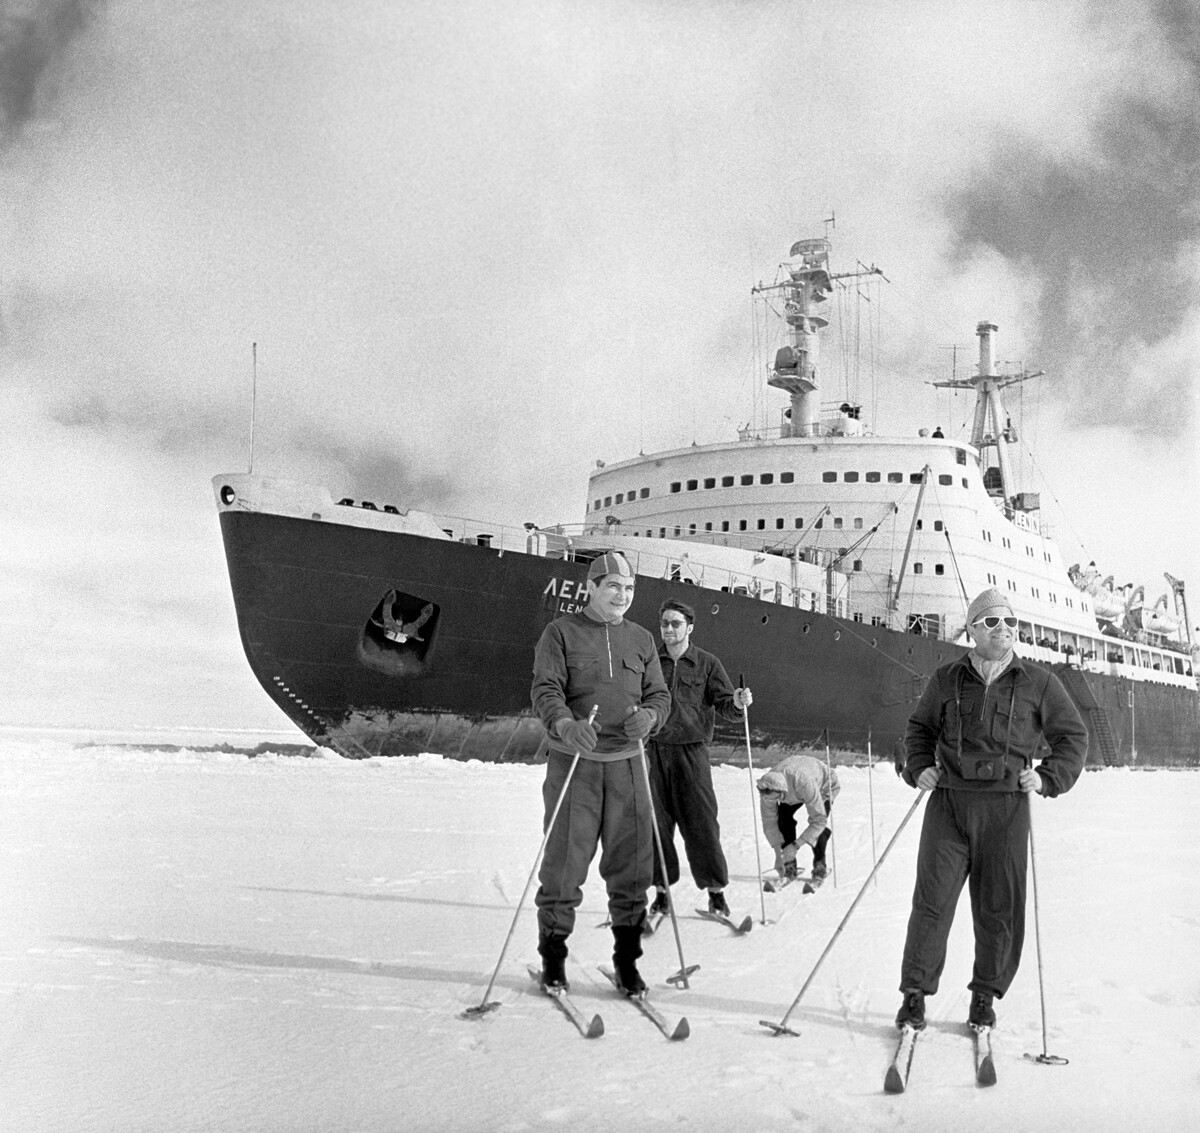 Membres de l'équipage du navire à propulsion nucléaire Lénine lors d'une excursion à ski pendant le court séjour du navire dans les glaces de l'Arctique en 1960